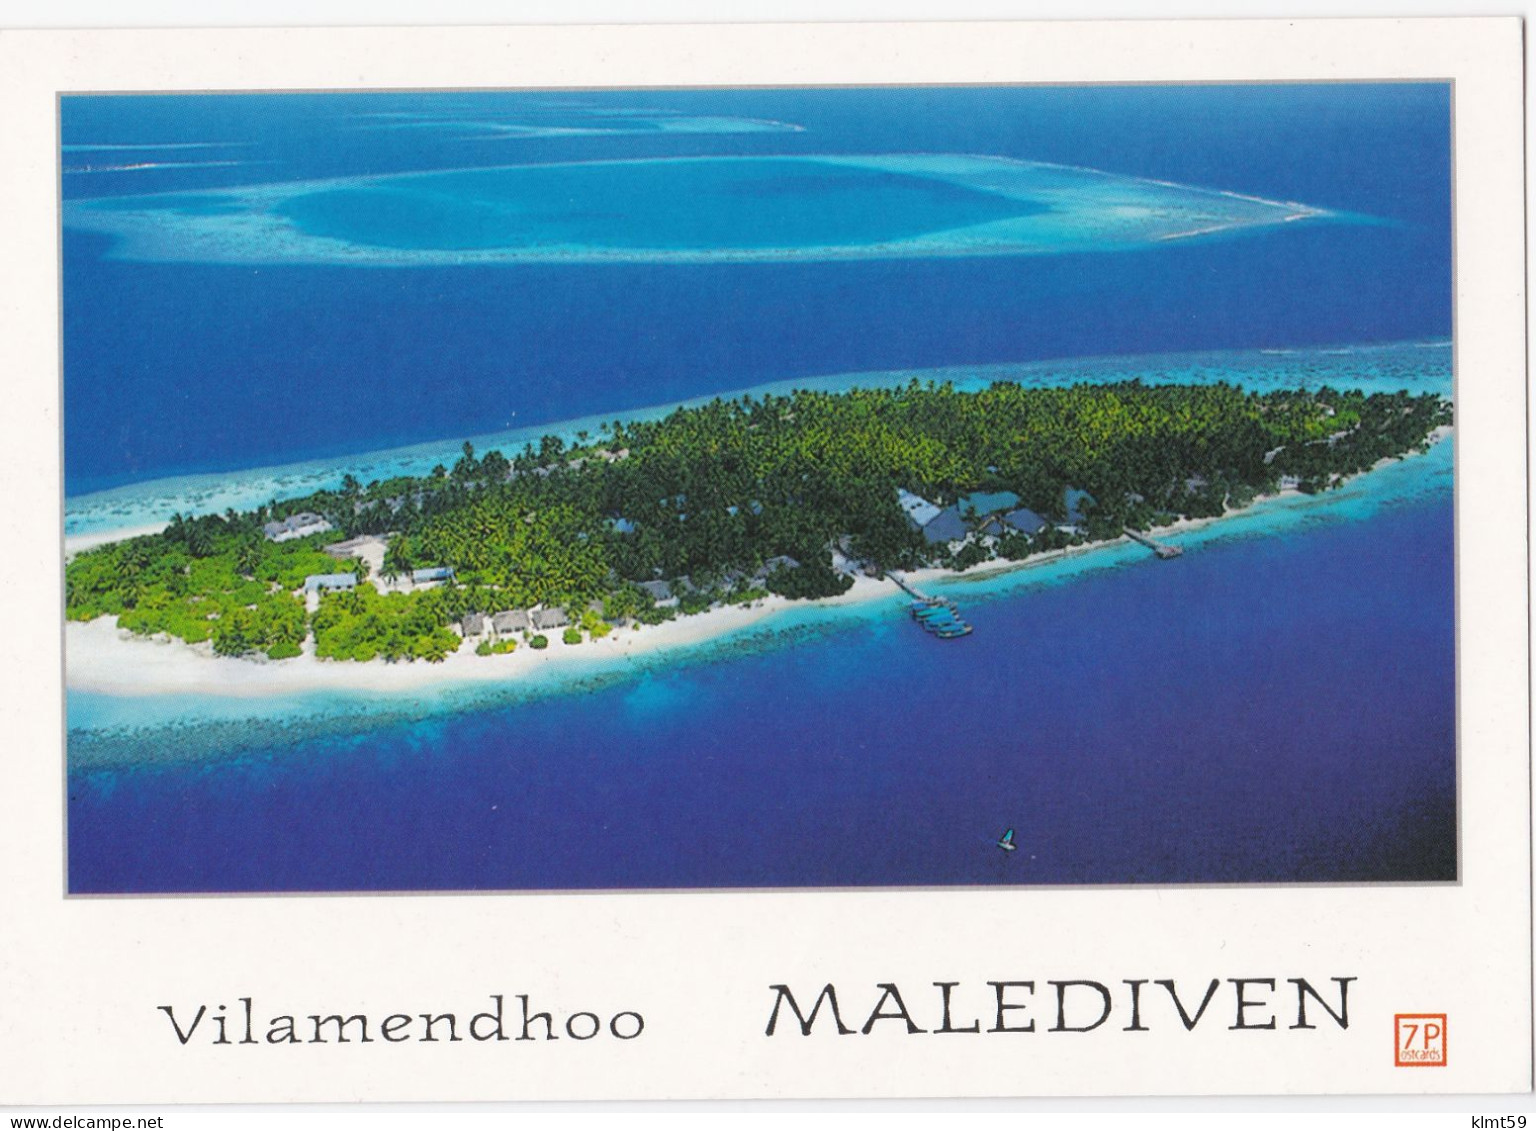 Vilamendhoo - Maldives